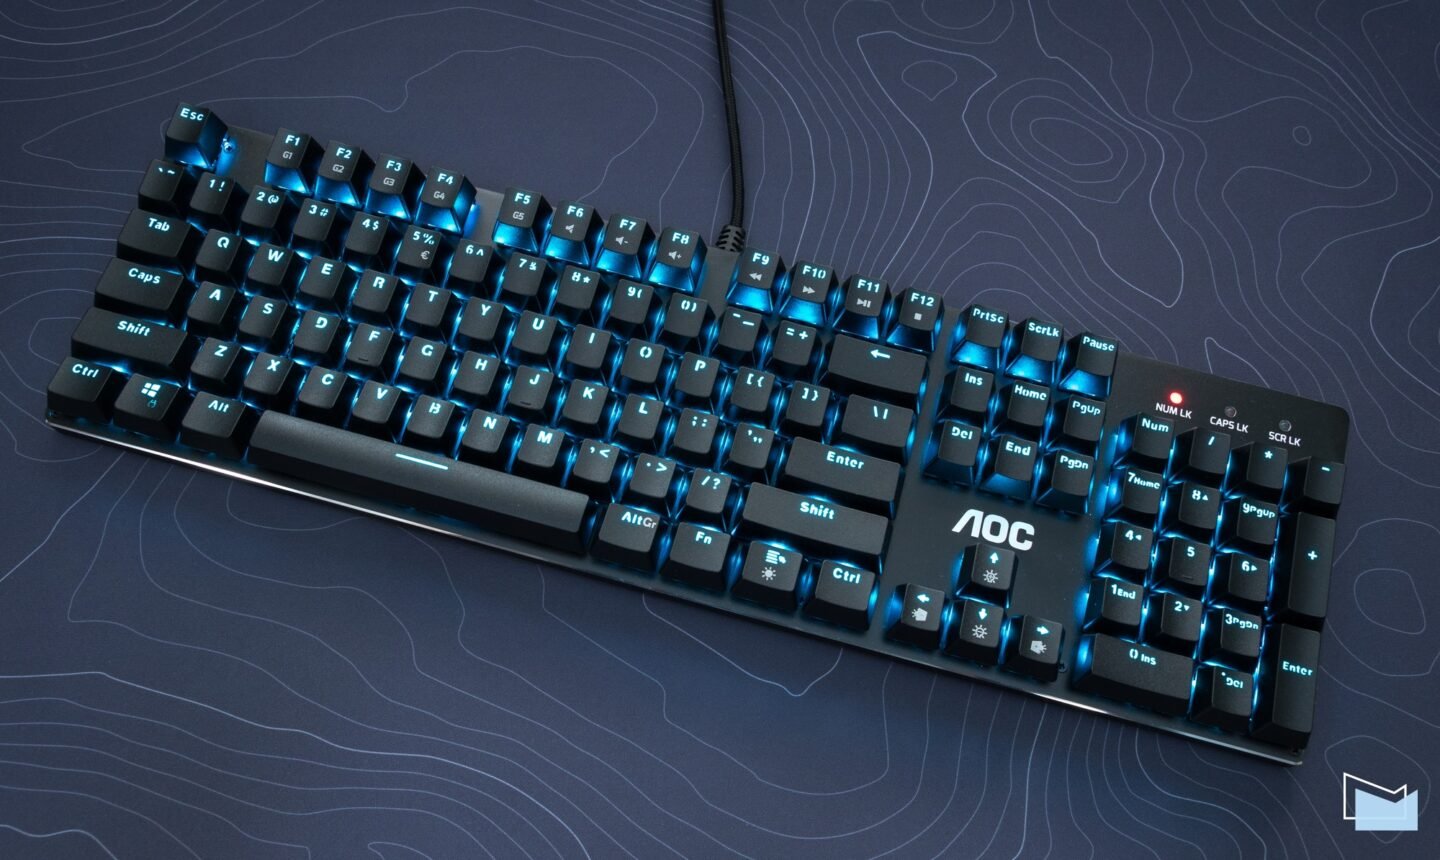 Огляд AOC GK500: ігрова механічна клавіатура з RGB-підсвічуванням